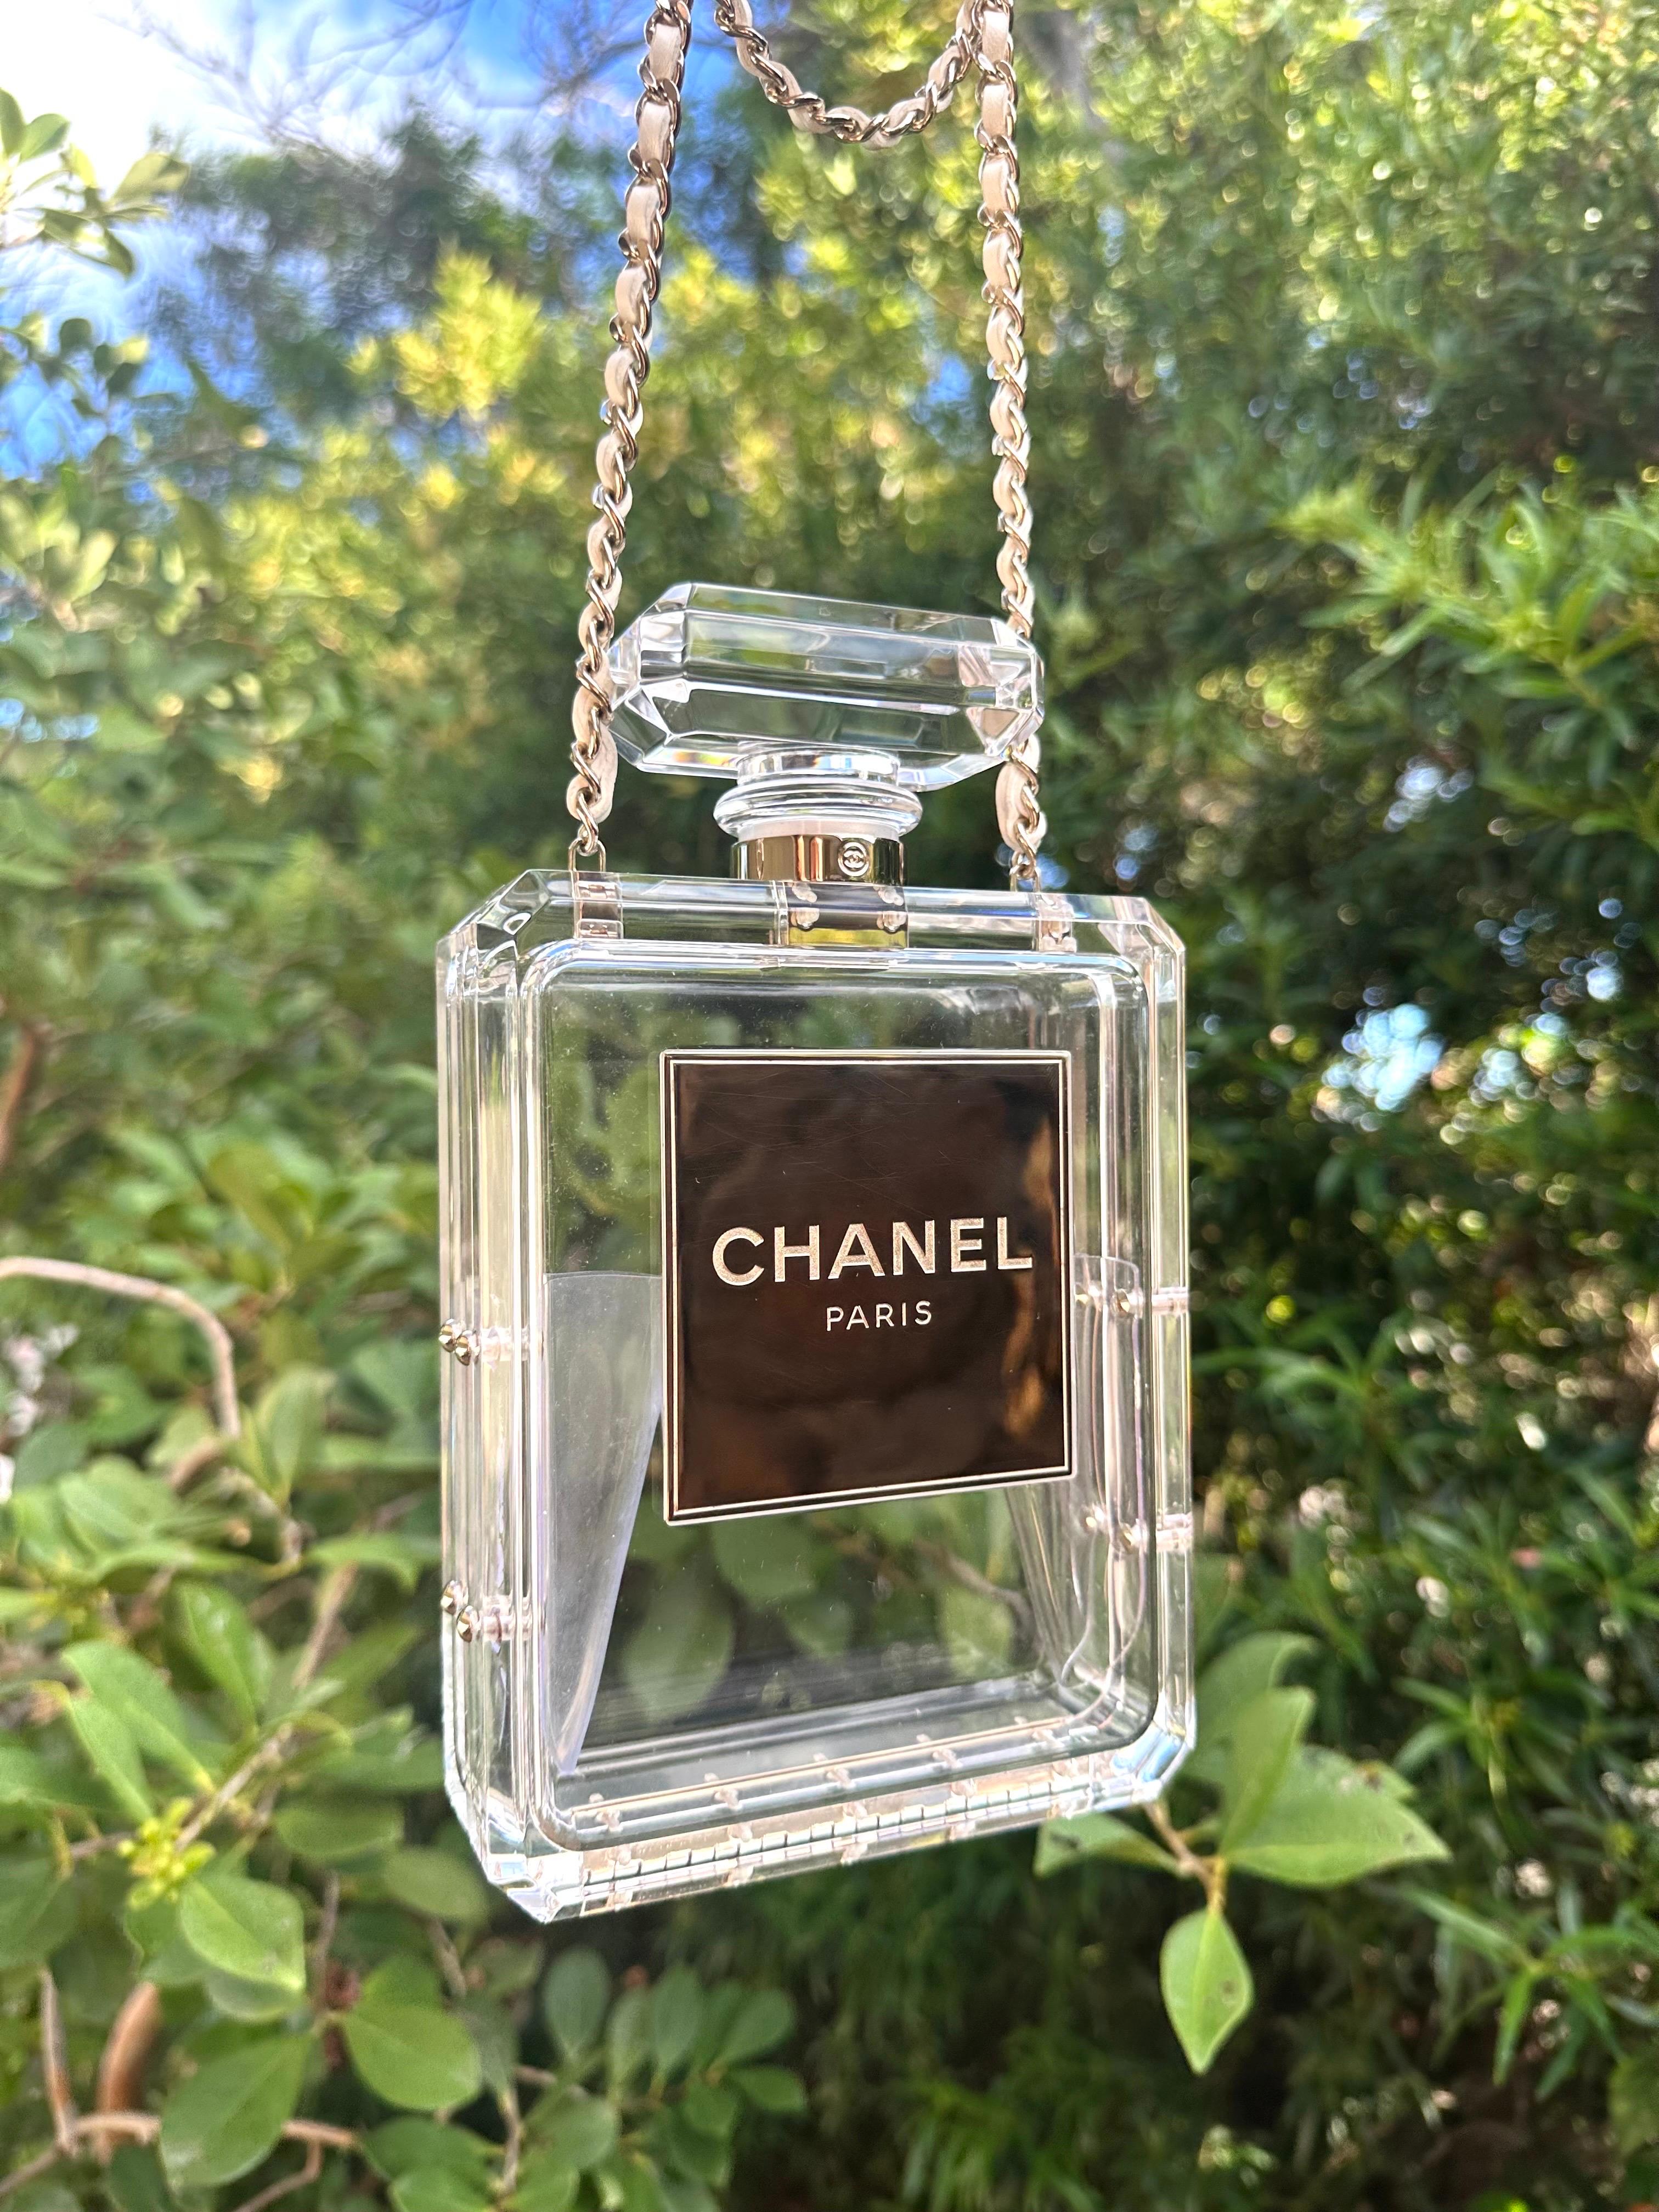 Chanel 2014 Cruise Clear Lucite N°5 Perfume Bottle Clutch - Limited Edition

MATERIAL : Plexiglas
Couleur : transparent
Condit : Très bon état - quelques légères noirceurs sur la garniture de la plaque avant / quelques décolorations sur la plaque